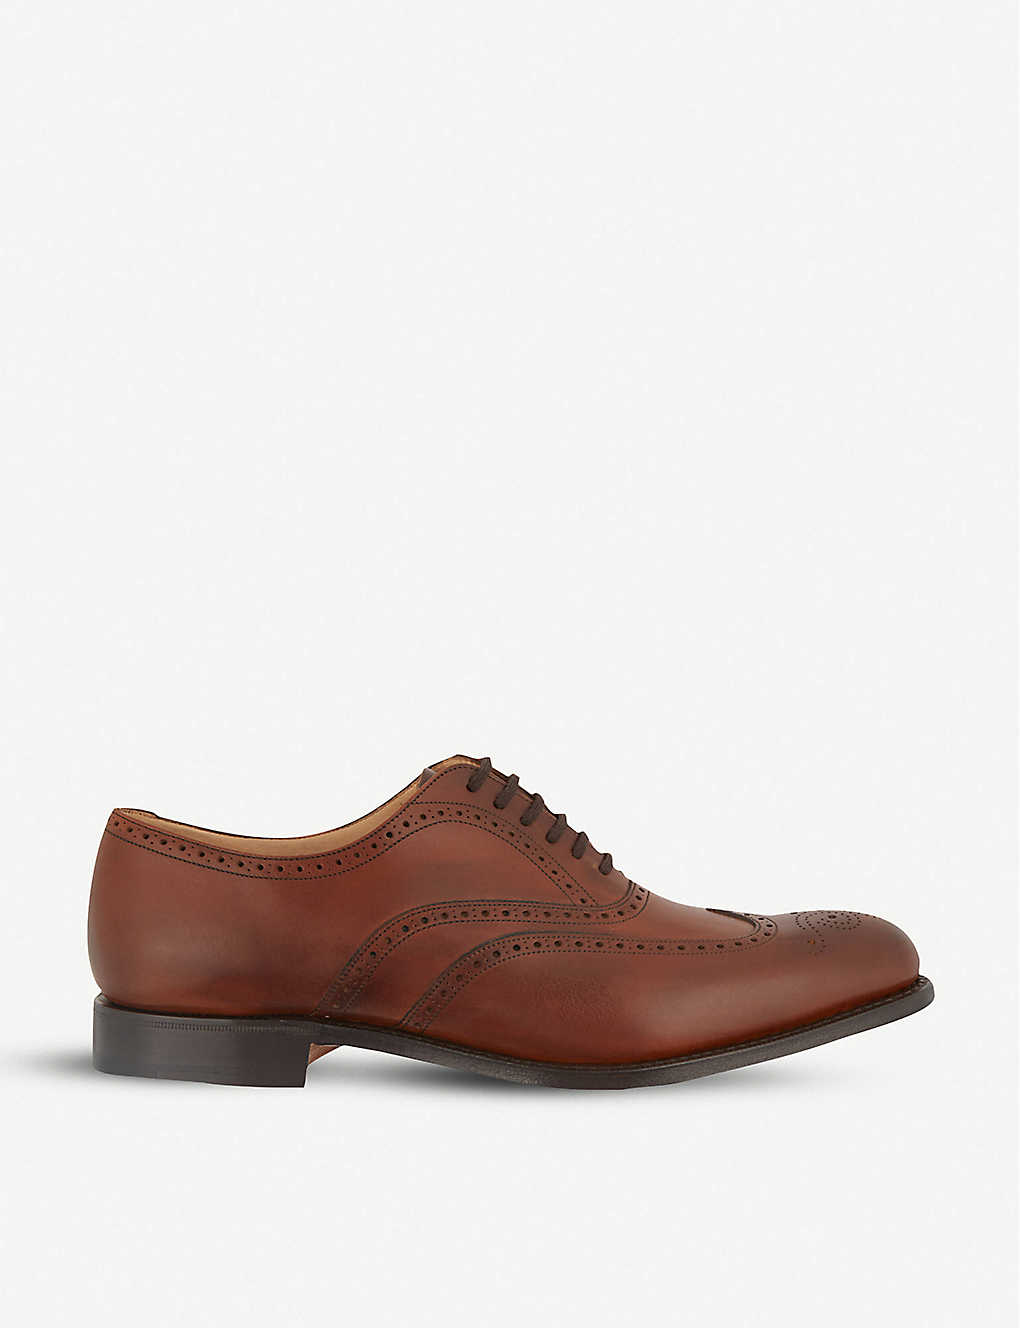 Selfridges & Co Men Shoes Flat Shoes Brogues Berlin Oxford shoes Mens Size: EUR 41 / 7 UK MEN 